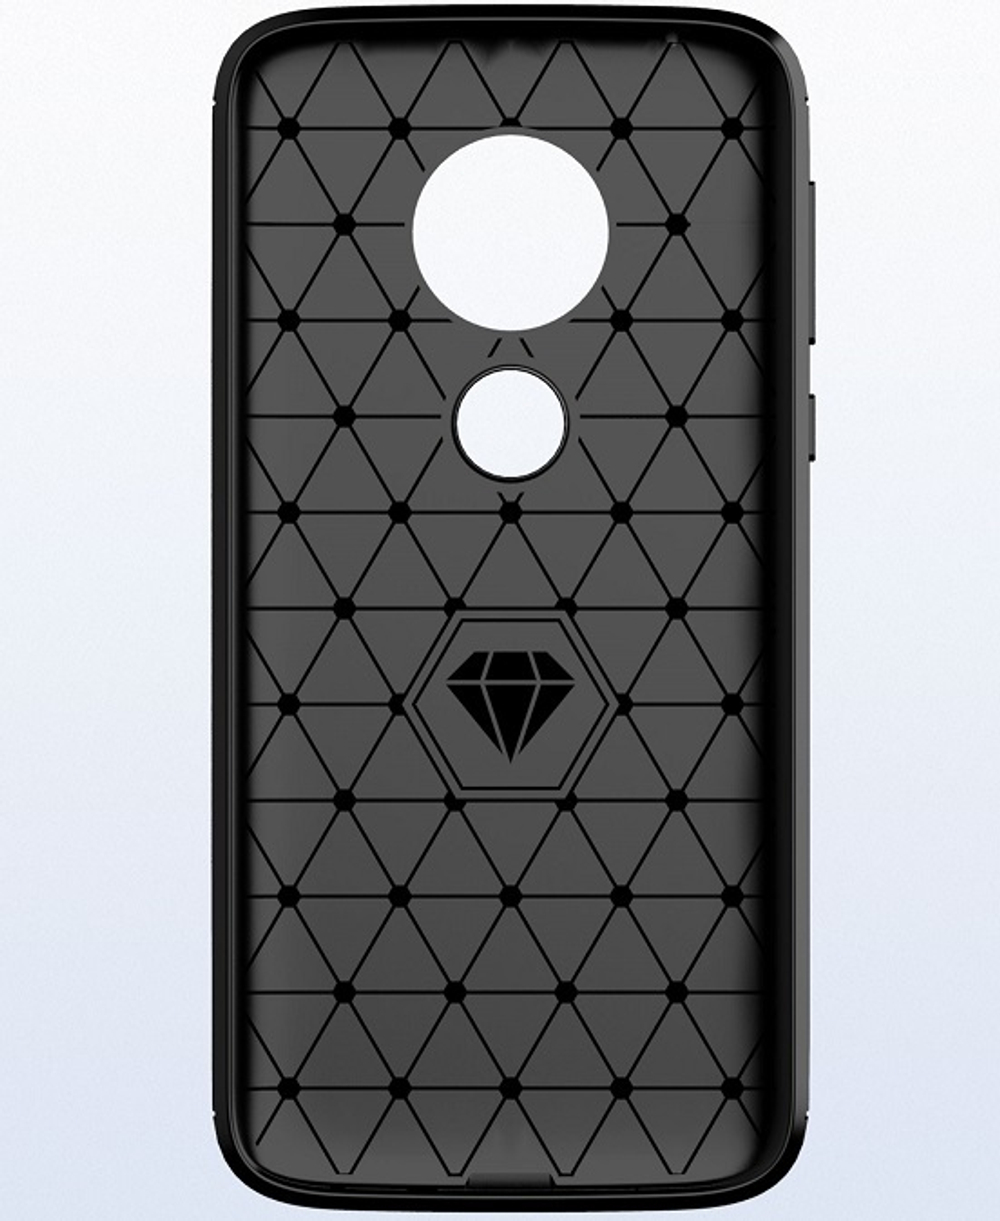 Чехол для Motorola Moto G7 Play цвет Black (черный), серия Carbon от Caseport